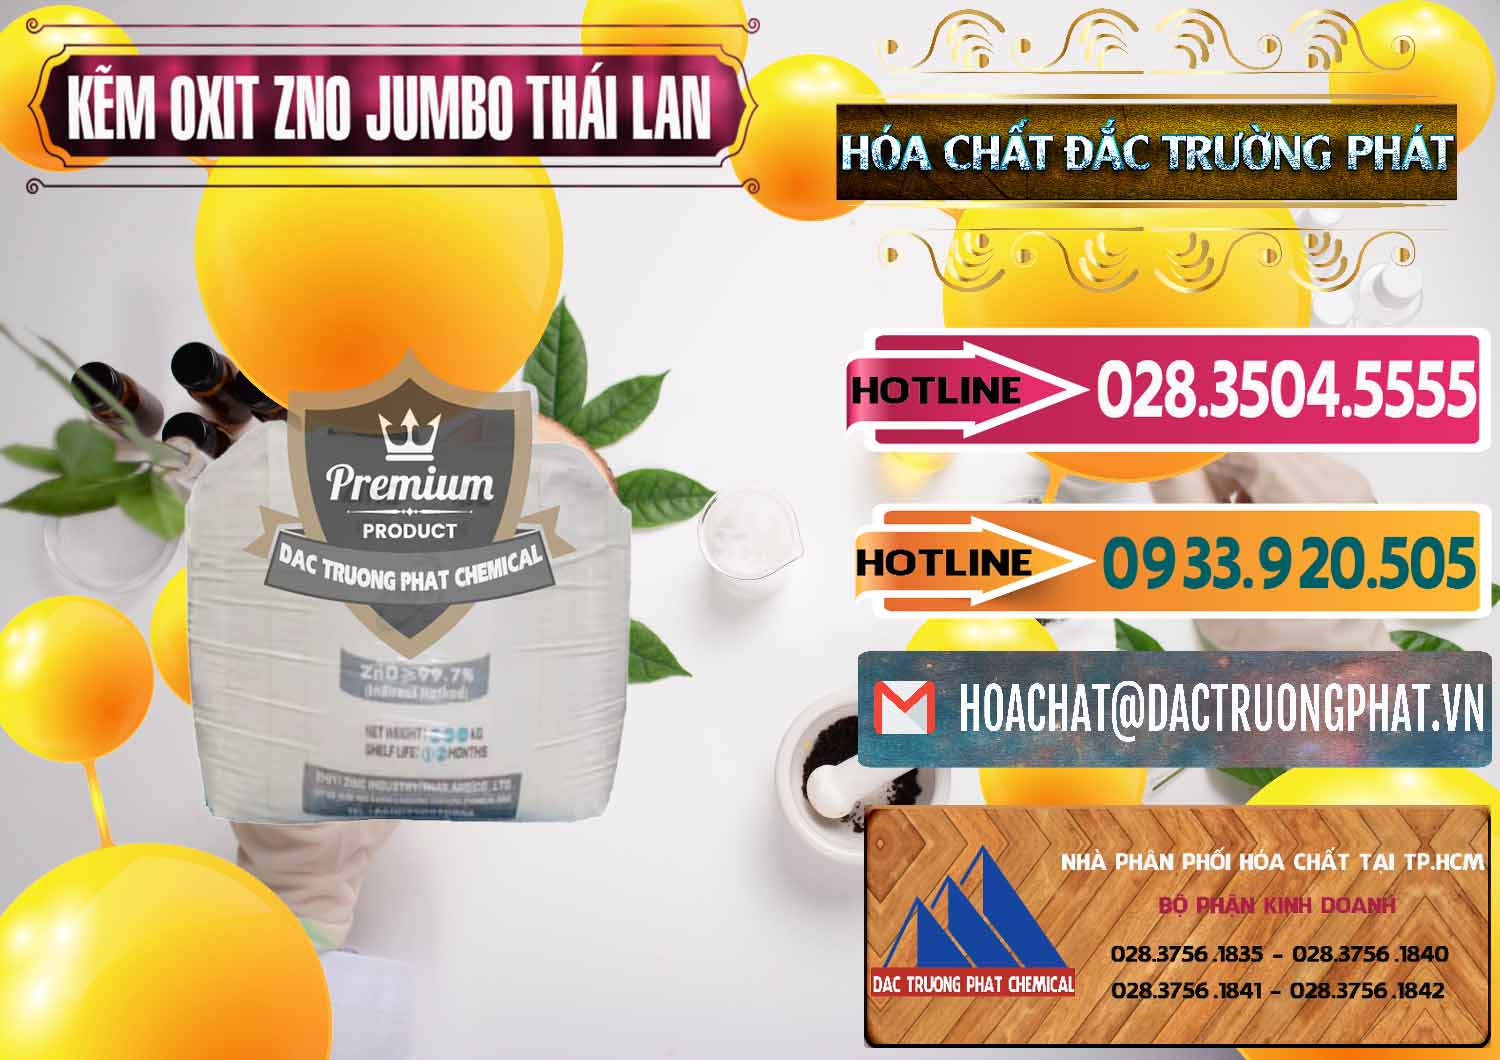 Đơn vị bán và cung cấp Zinc Oxide - Bột Kẽm Oxit ZNO Jumbo Bành Thái Lan Thailand - 0370 - Cty bán - cung cấp hóa chất tại TP.HCM - dactruongphat.vn